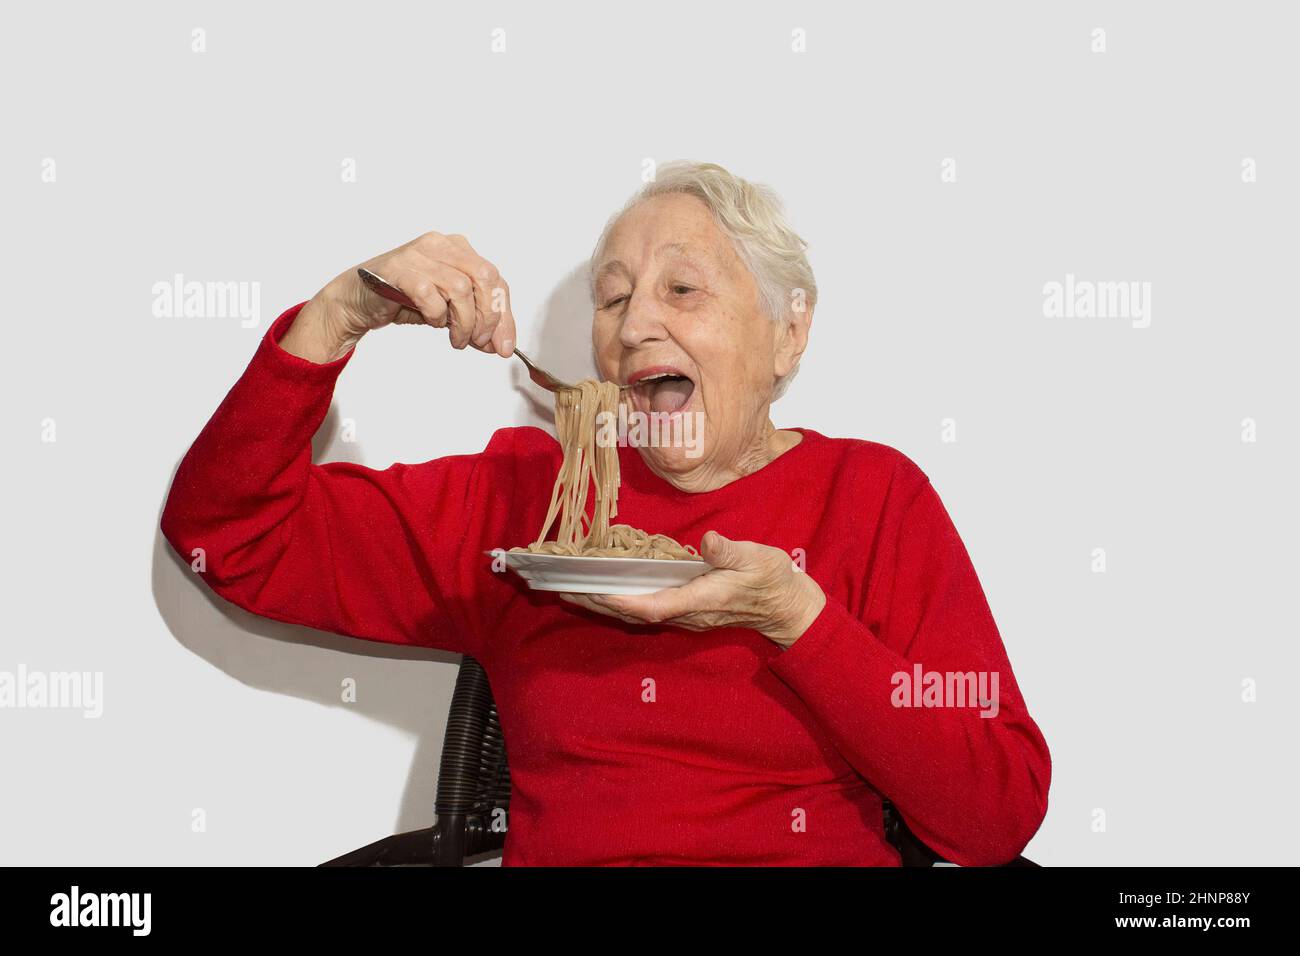 Happy senior woman eating italian spaghetti pasta isolated on white studio Stock Photo